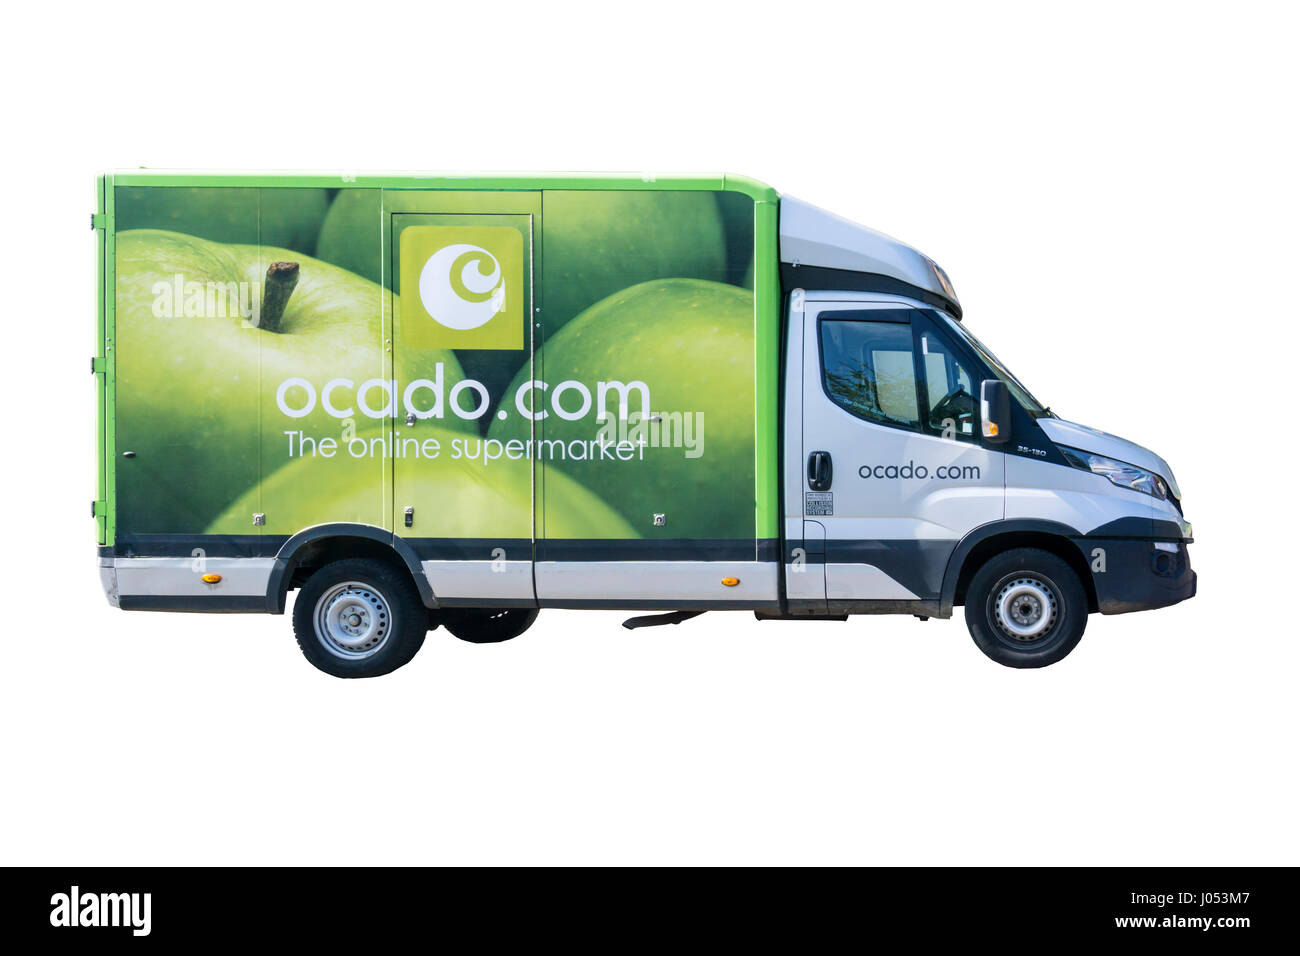 Décoration d'un camion de livraison pour l'Ocado le supermarché en ligne. Banque D'Images